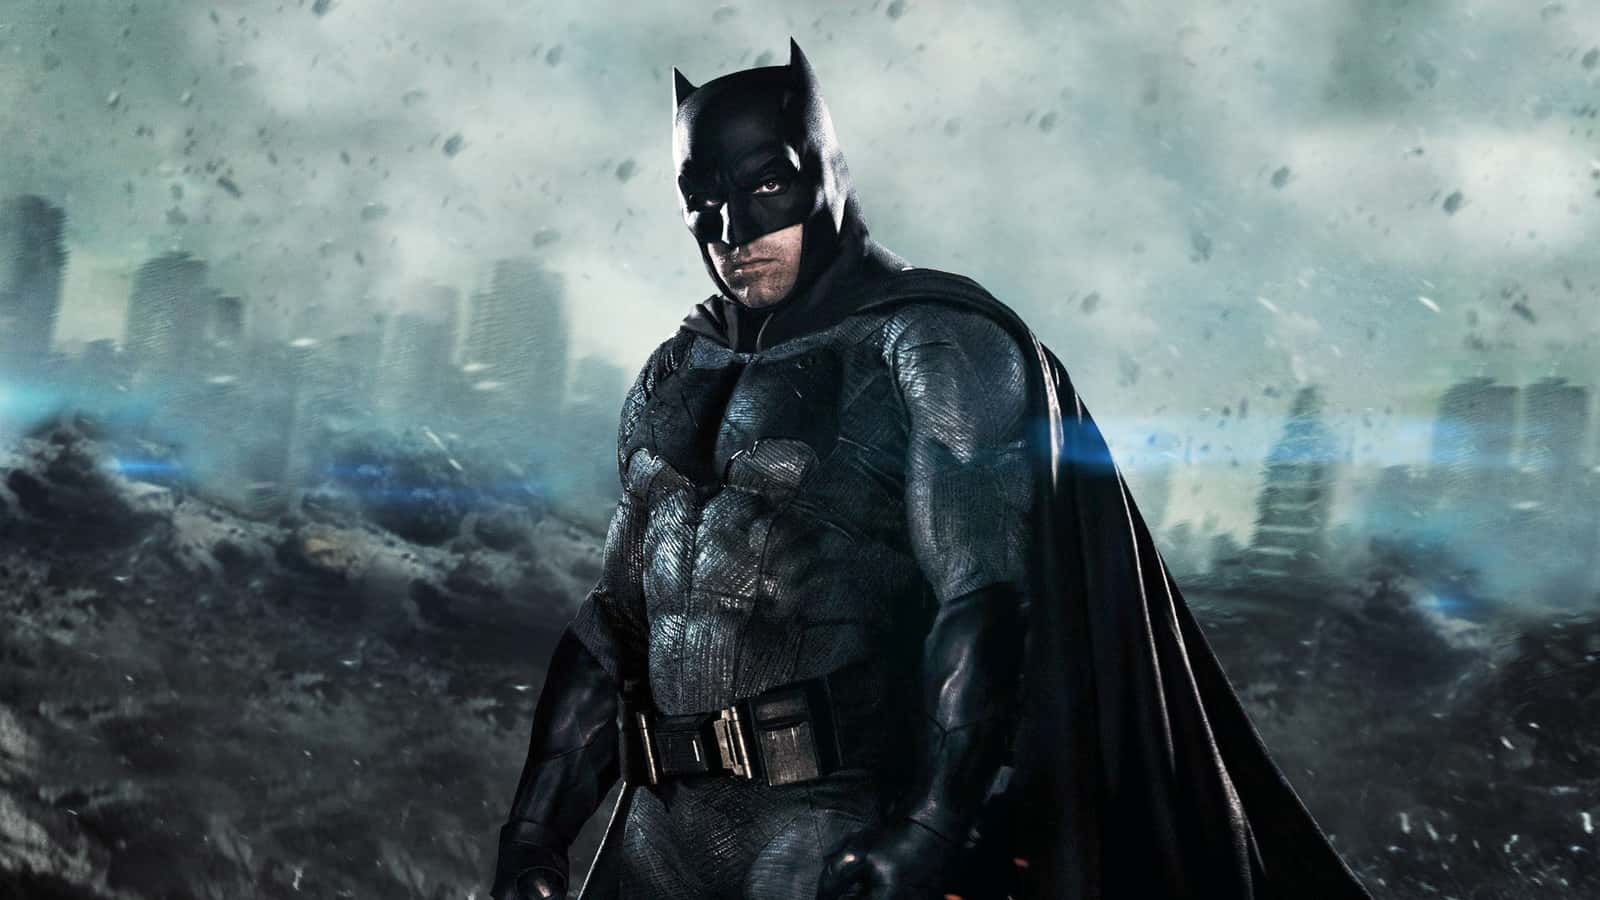 Justice League : Zack Snyder dévoile des images inédites de Batman